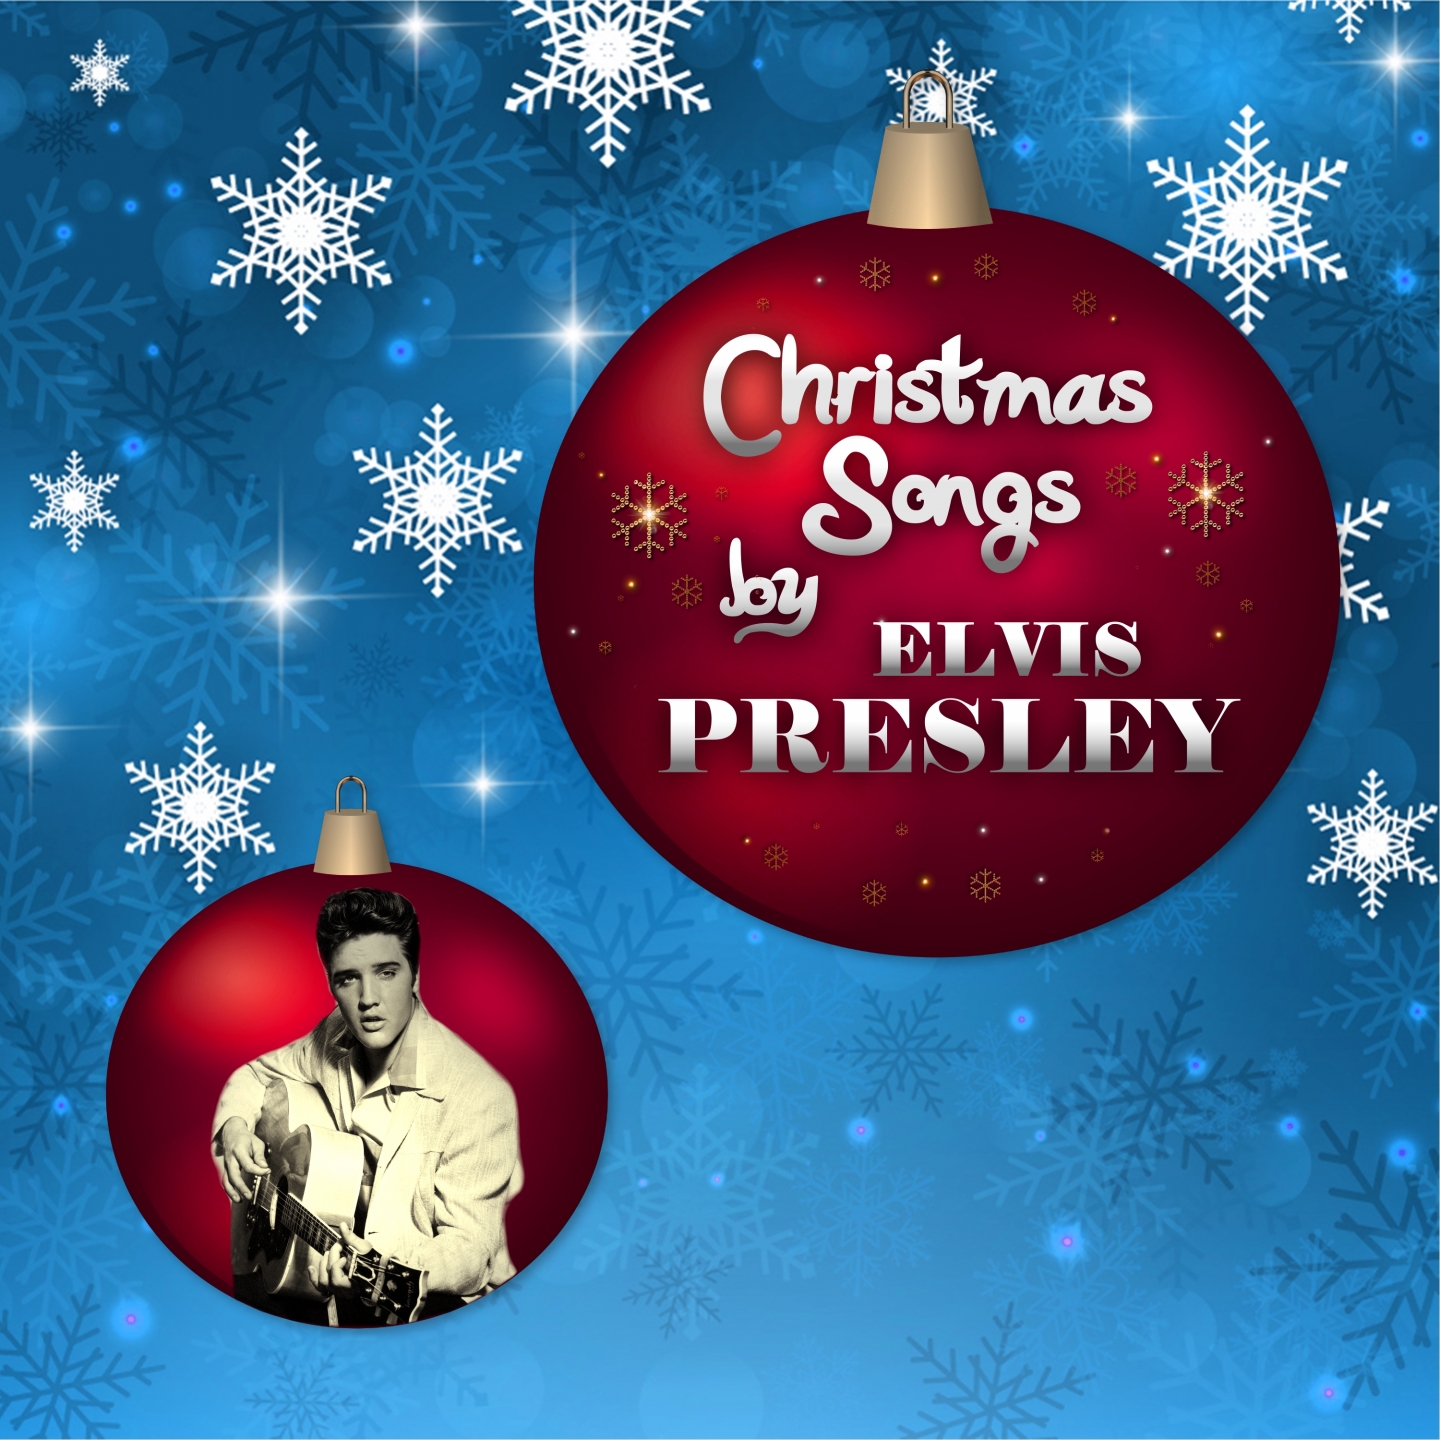 Christmas Songs by Elvis Presley